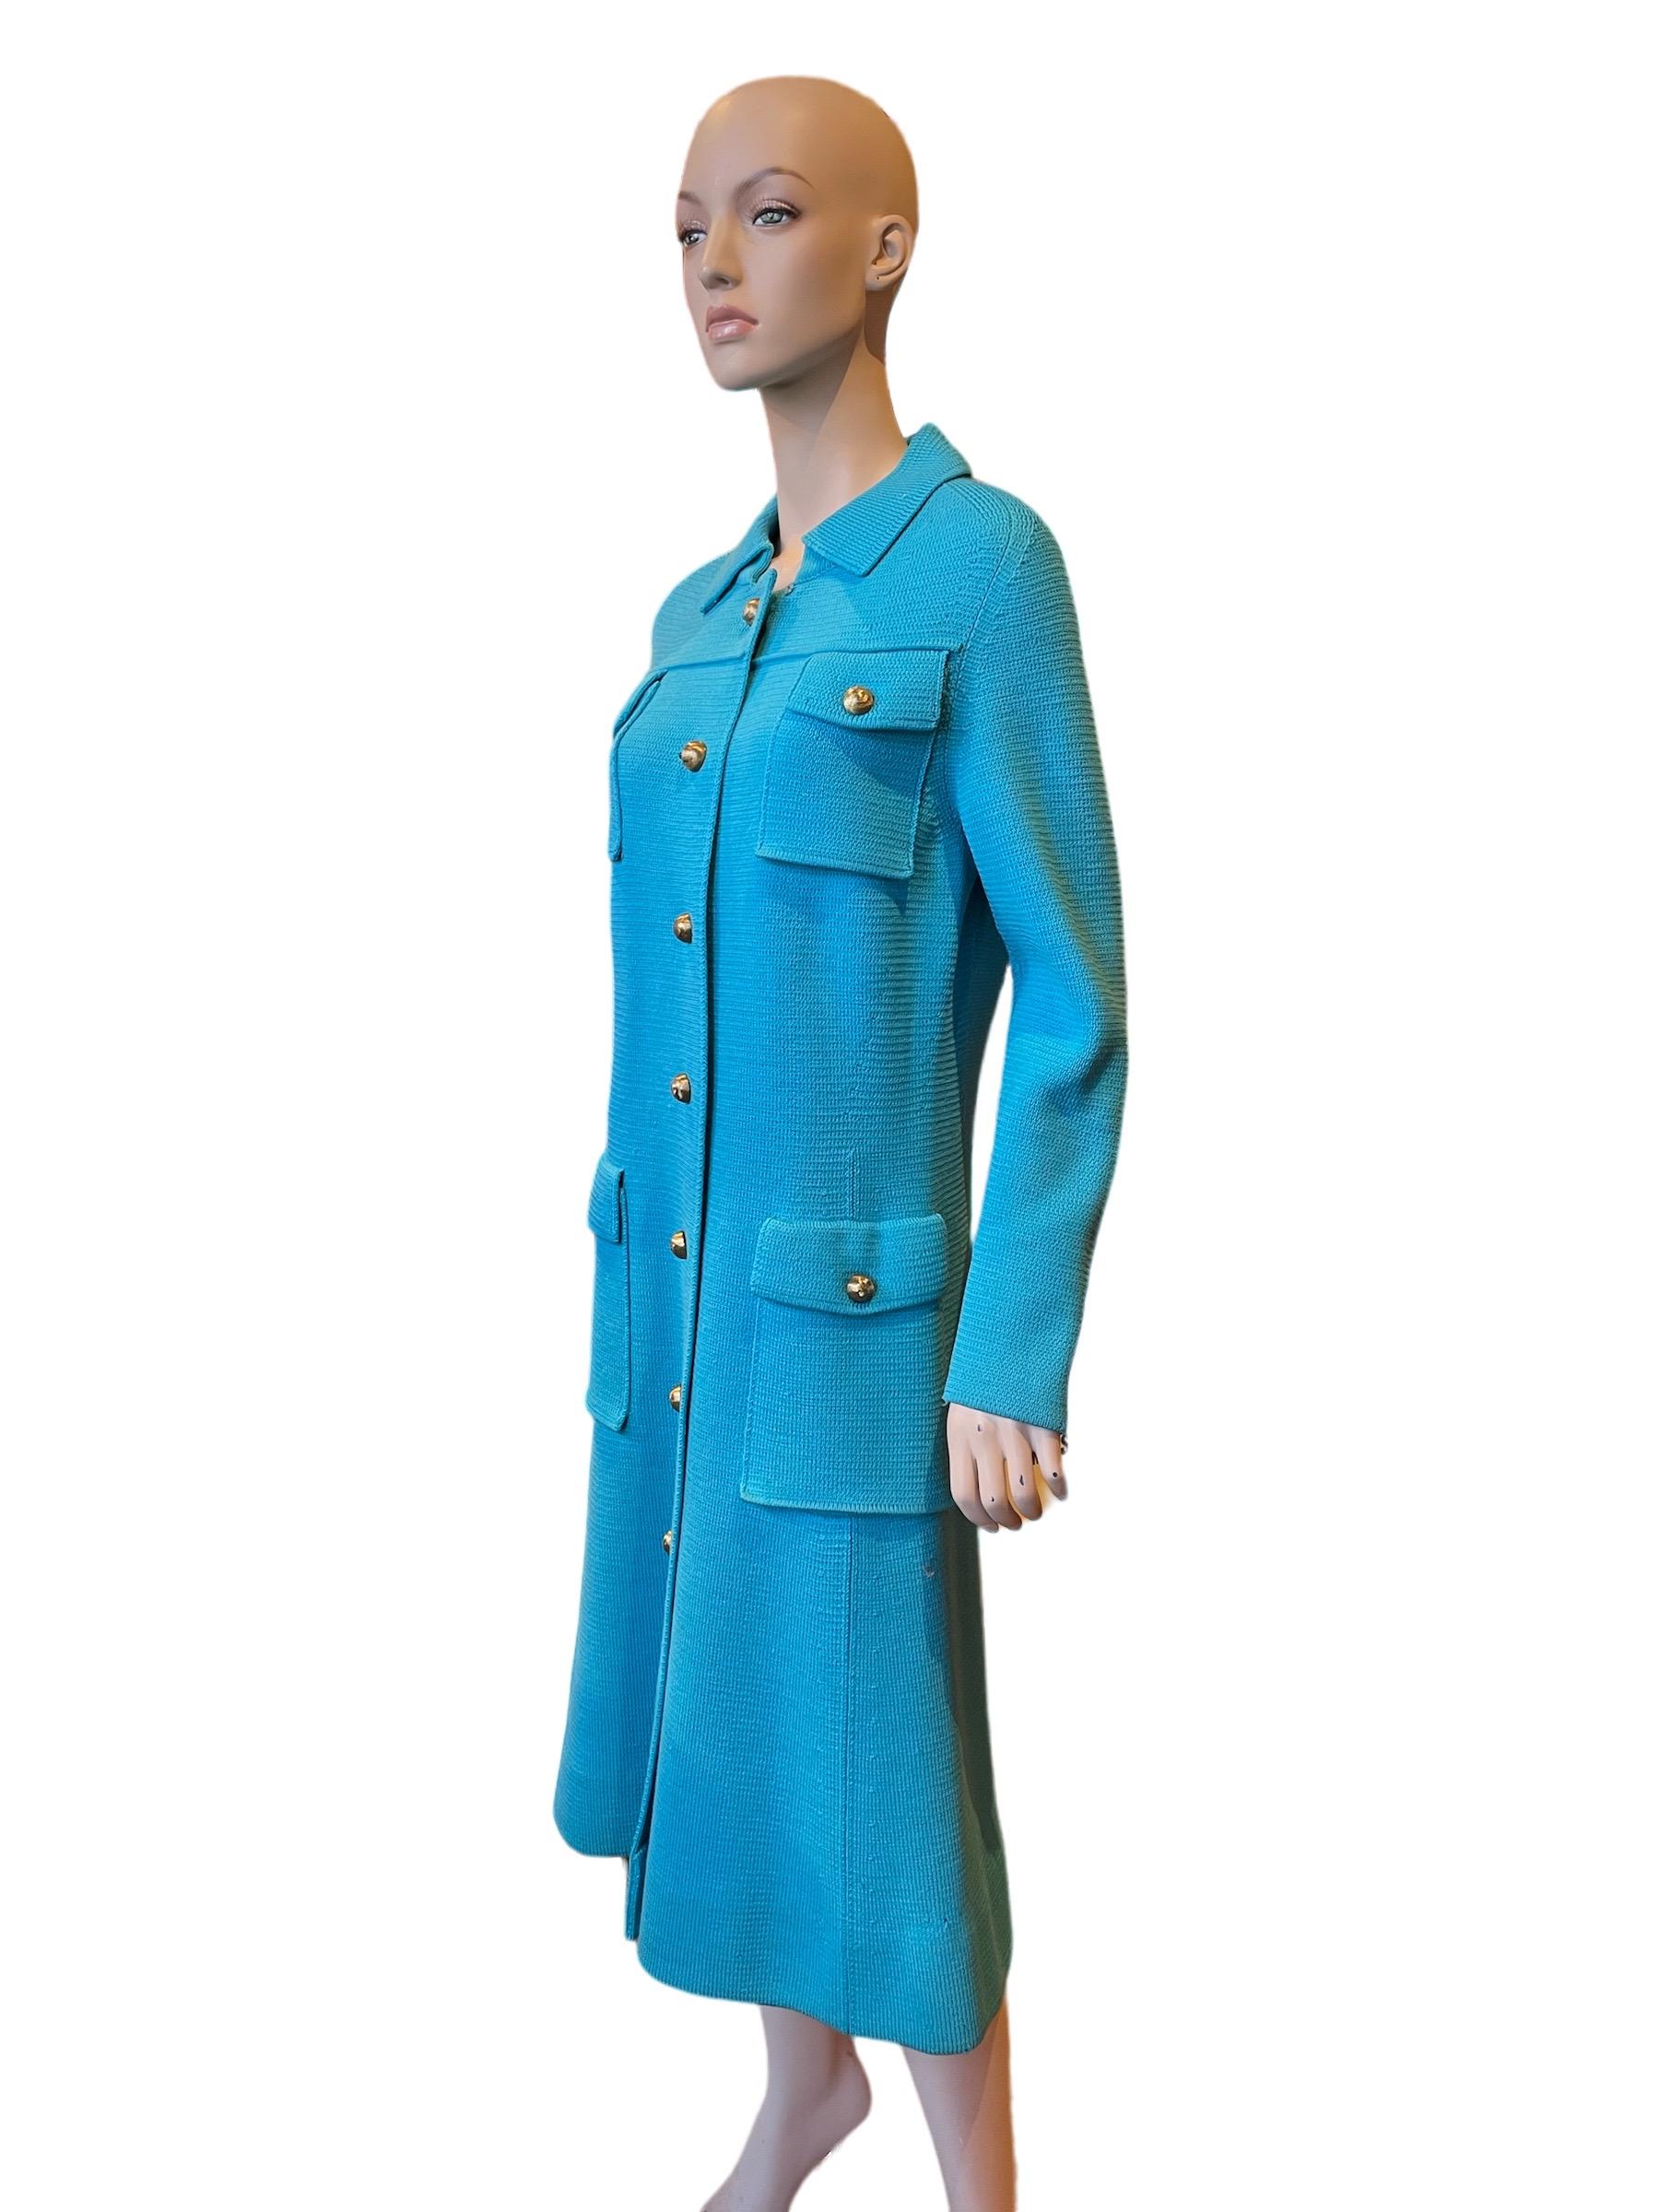 Albertina Roma - Manteau long turquoise avec boutons dorés, années 1960 Bon état - En vente à Greenport, NY